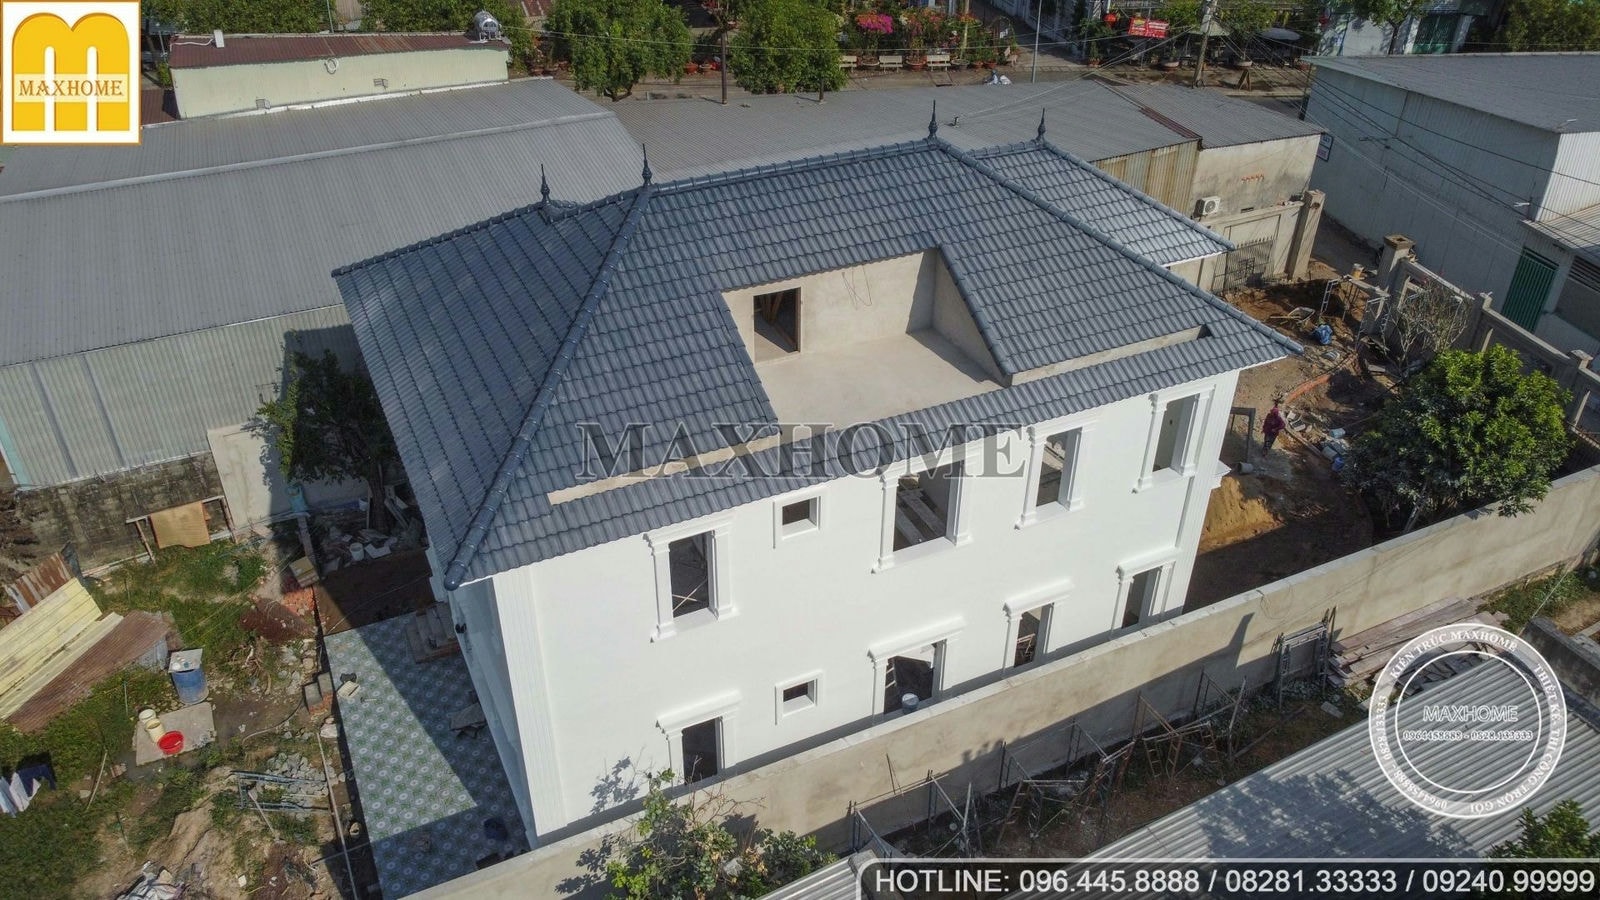 Nhà mái Nhật 2 tầng Tân Cổ Điển đã hoàn thiện 80% siêu đẹp tại Hóc Môn